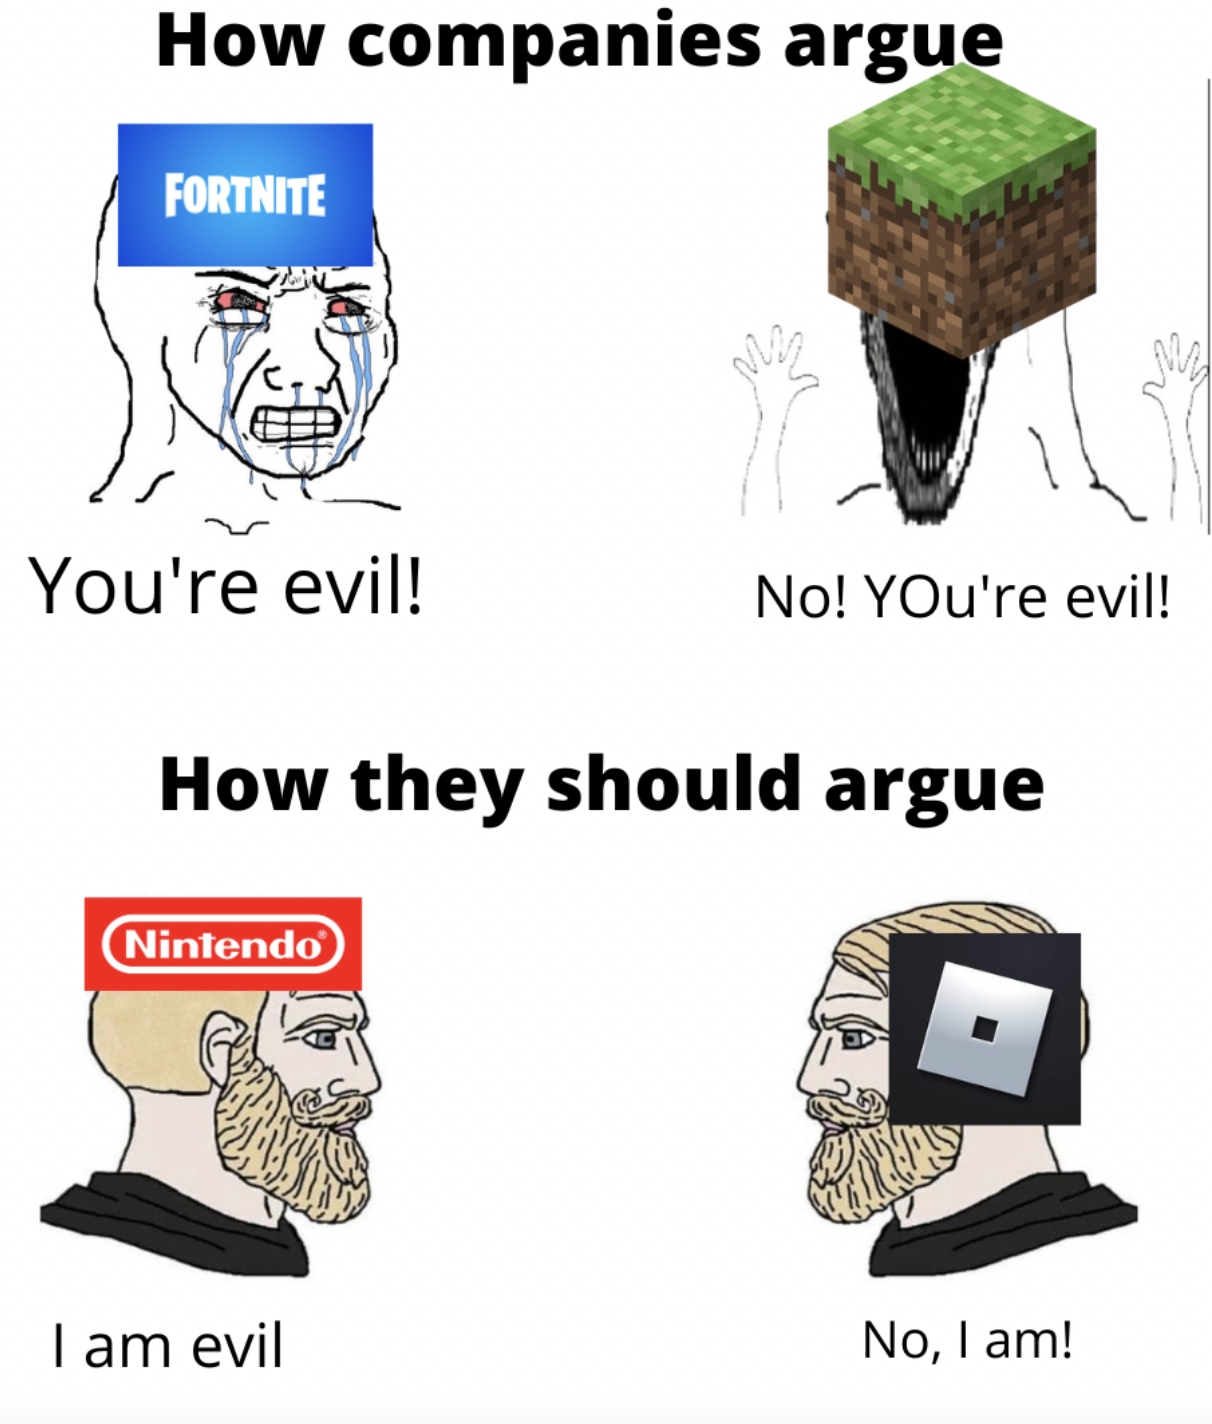 Gaming memes - How companies argue Fortnite You're evil! How they should argue 1 Nintendo No! YOu're evil! I am evil No, I am!